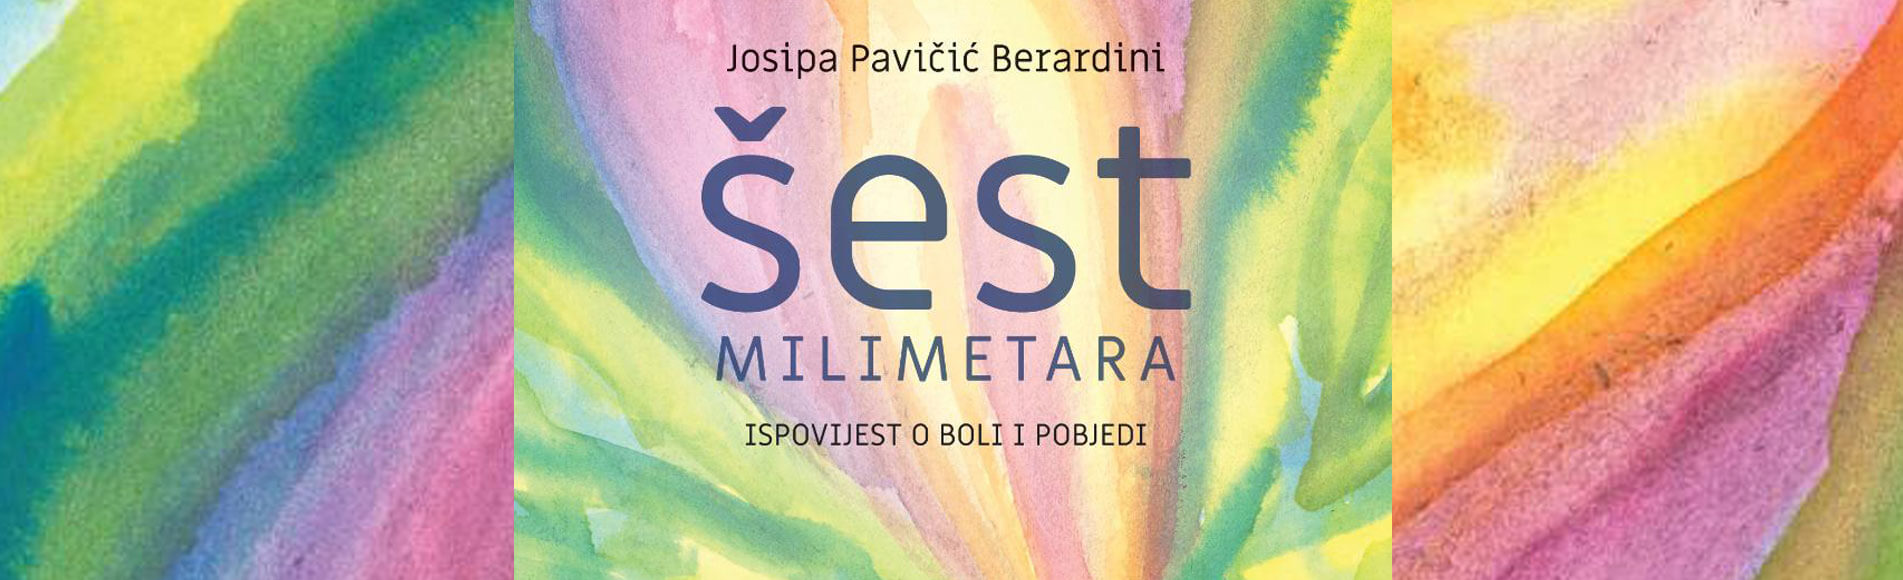 Promocija knjige Josipe Pavičić Berardini - Šest milimetara